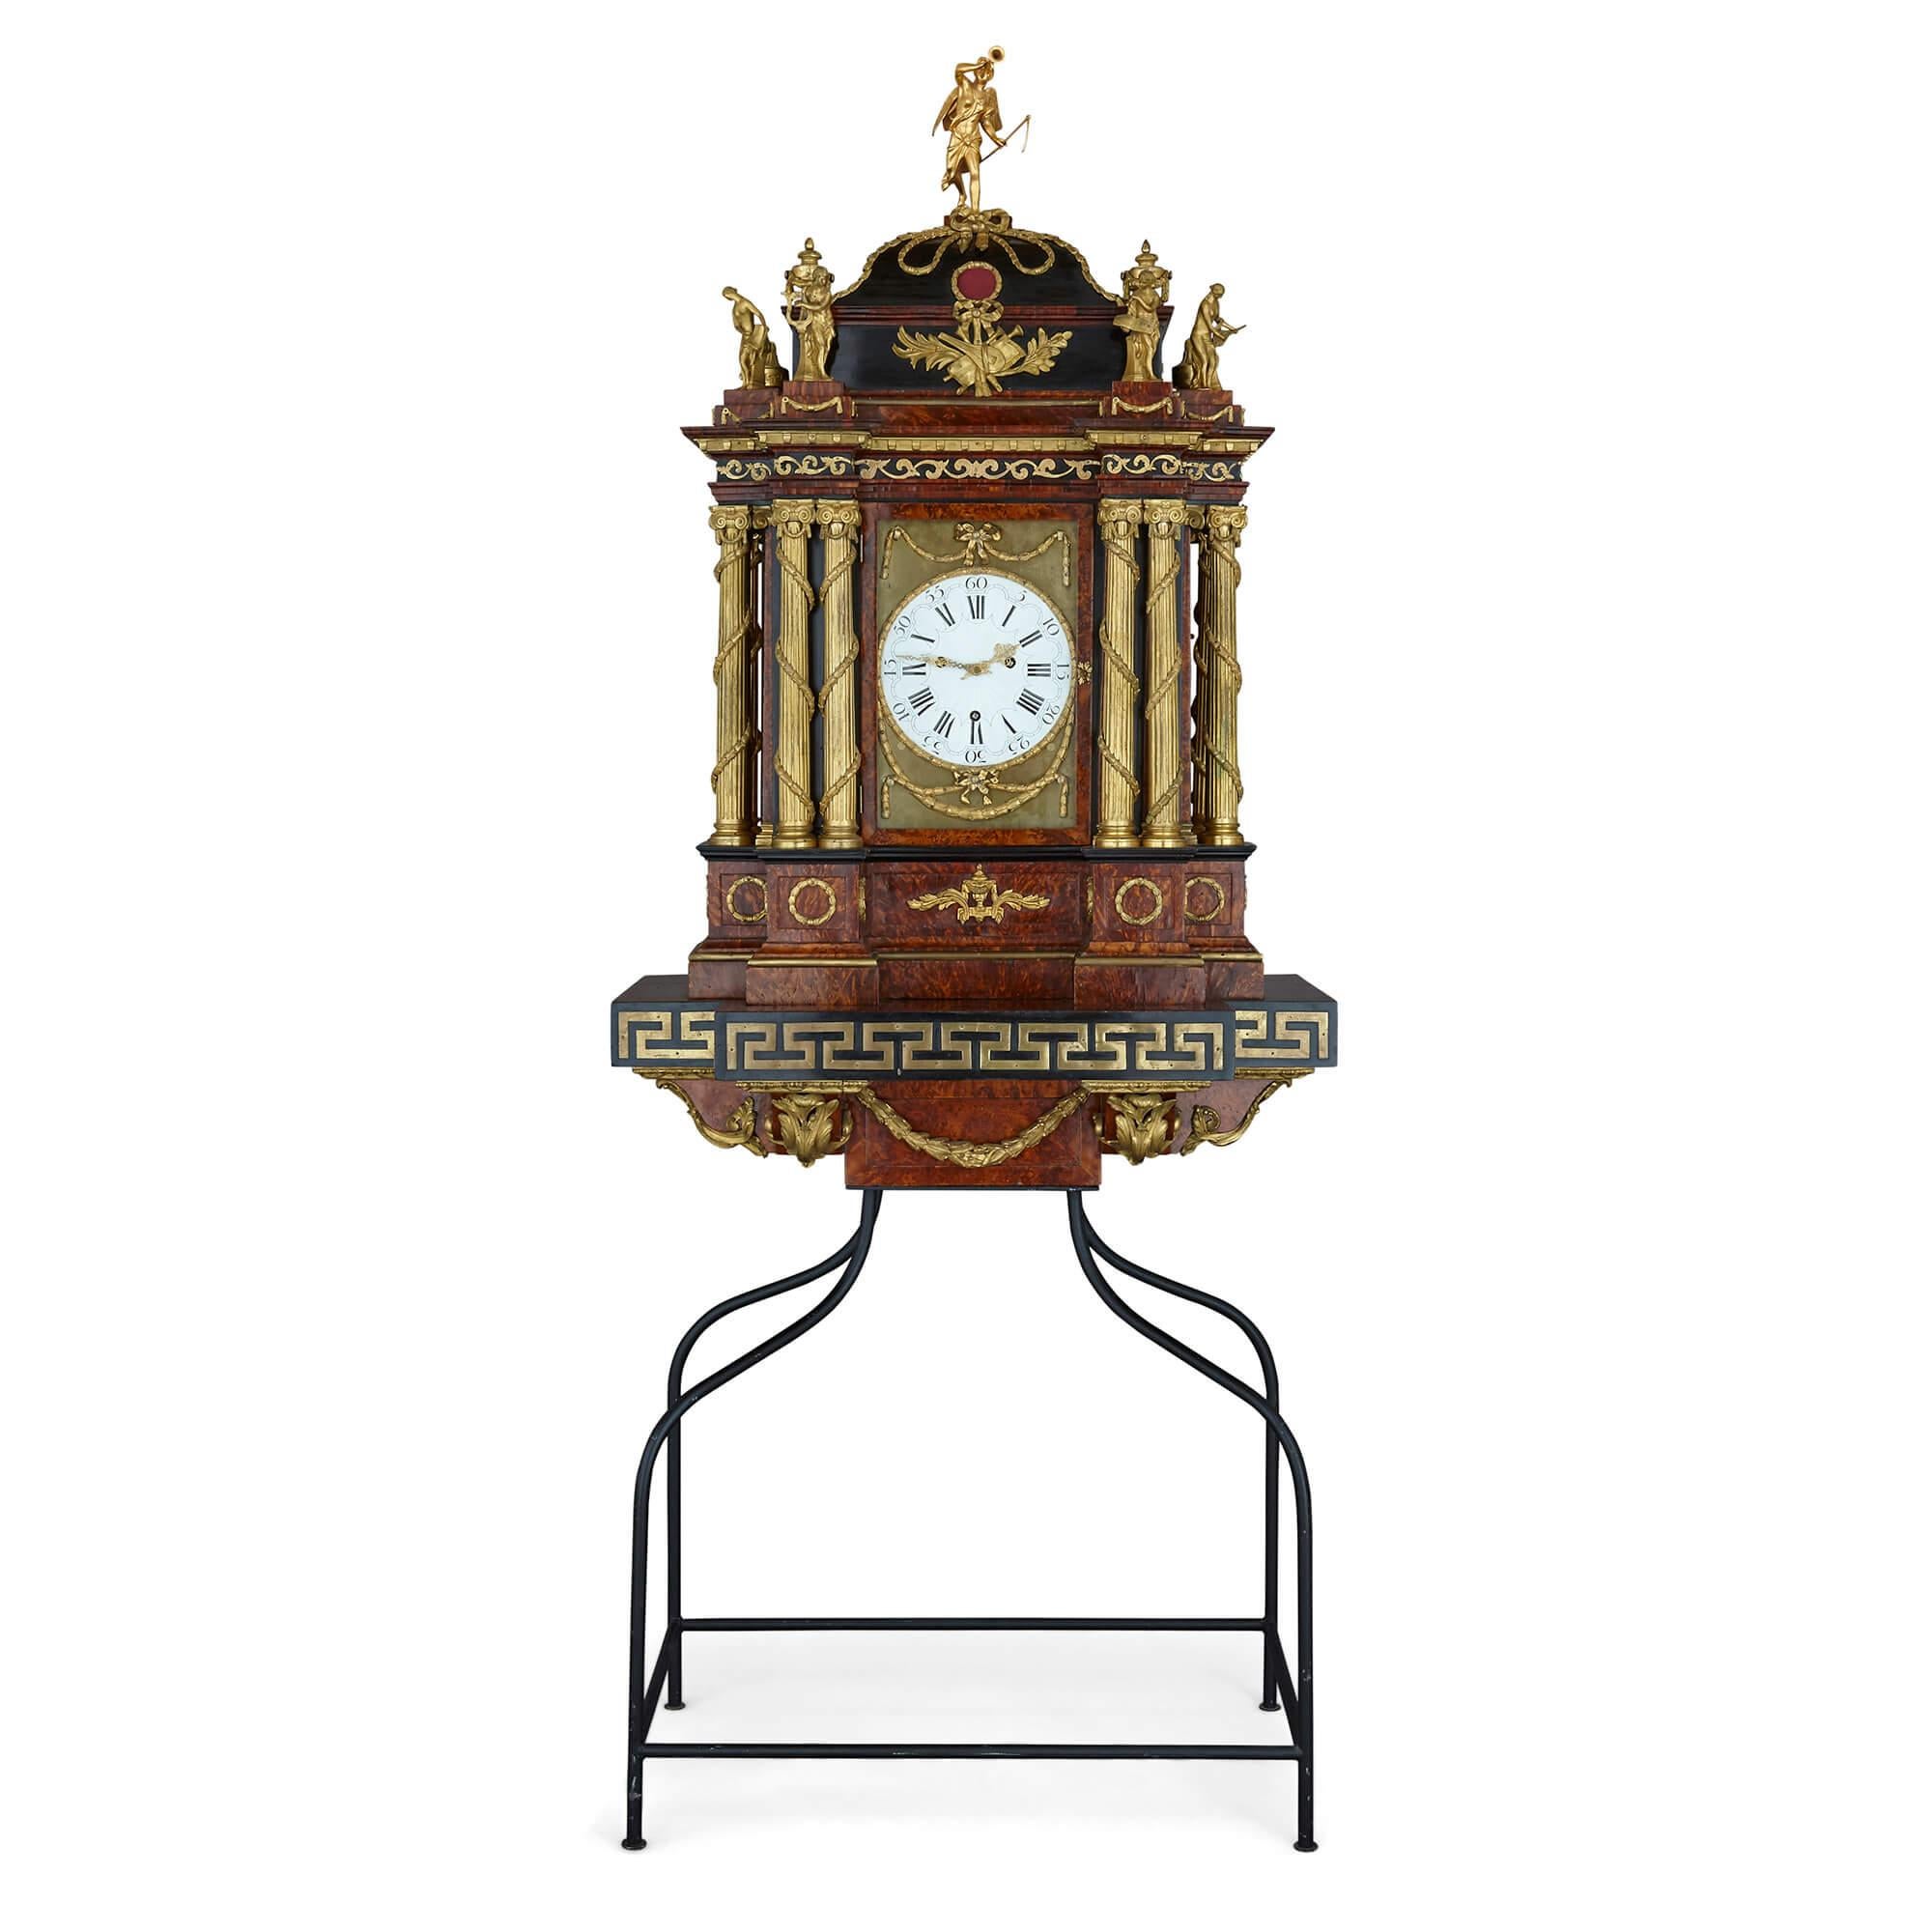 Grande horloge musicale autrichienne de style baroque montée en bronze doré
Autriche, début du 19e siècle
Hauteur totale : 211 cm
Horloge : Hauteur 135cm, largeur 86cm, profondeur 52
Socle : Hauteur 76 cm, largeur 81 cm, profondeur 48